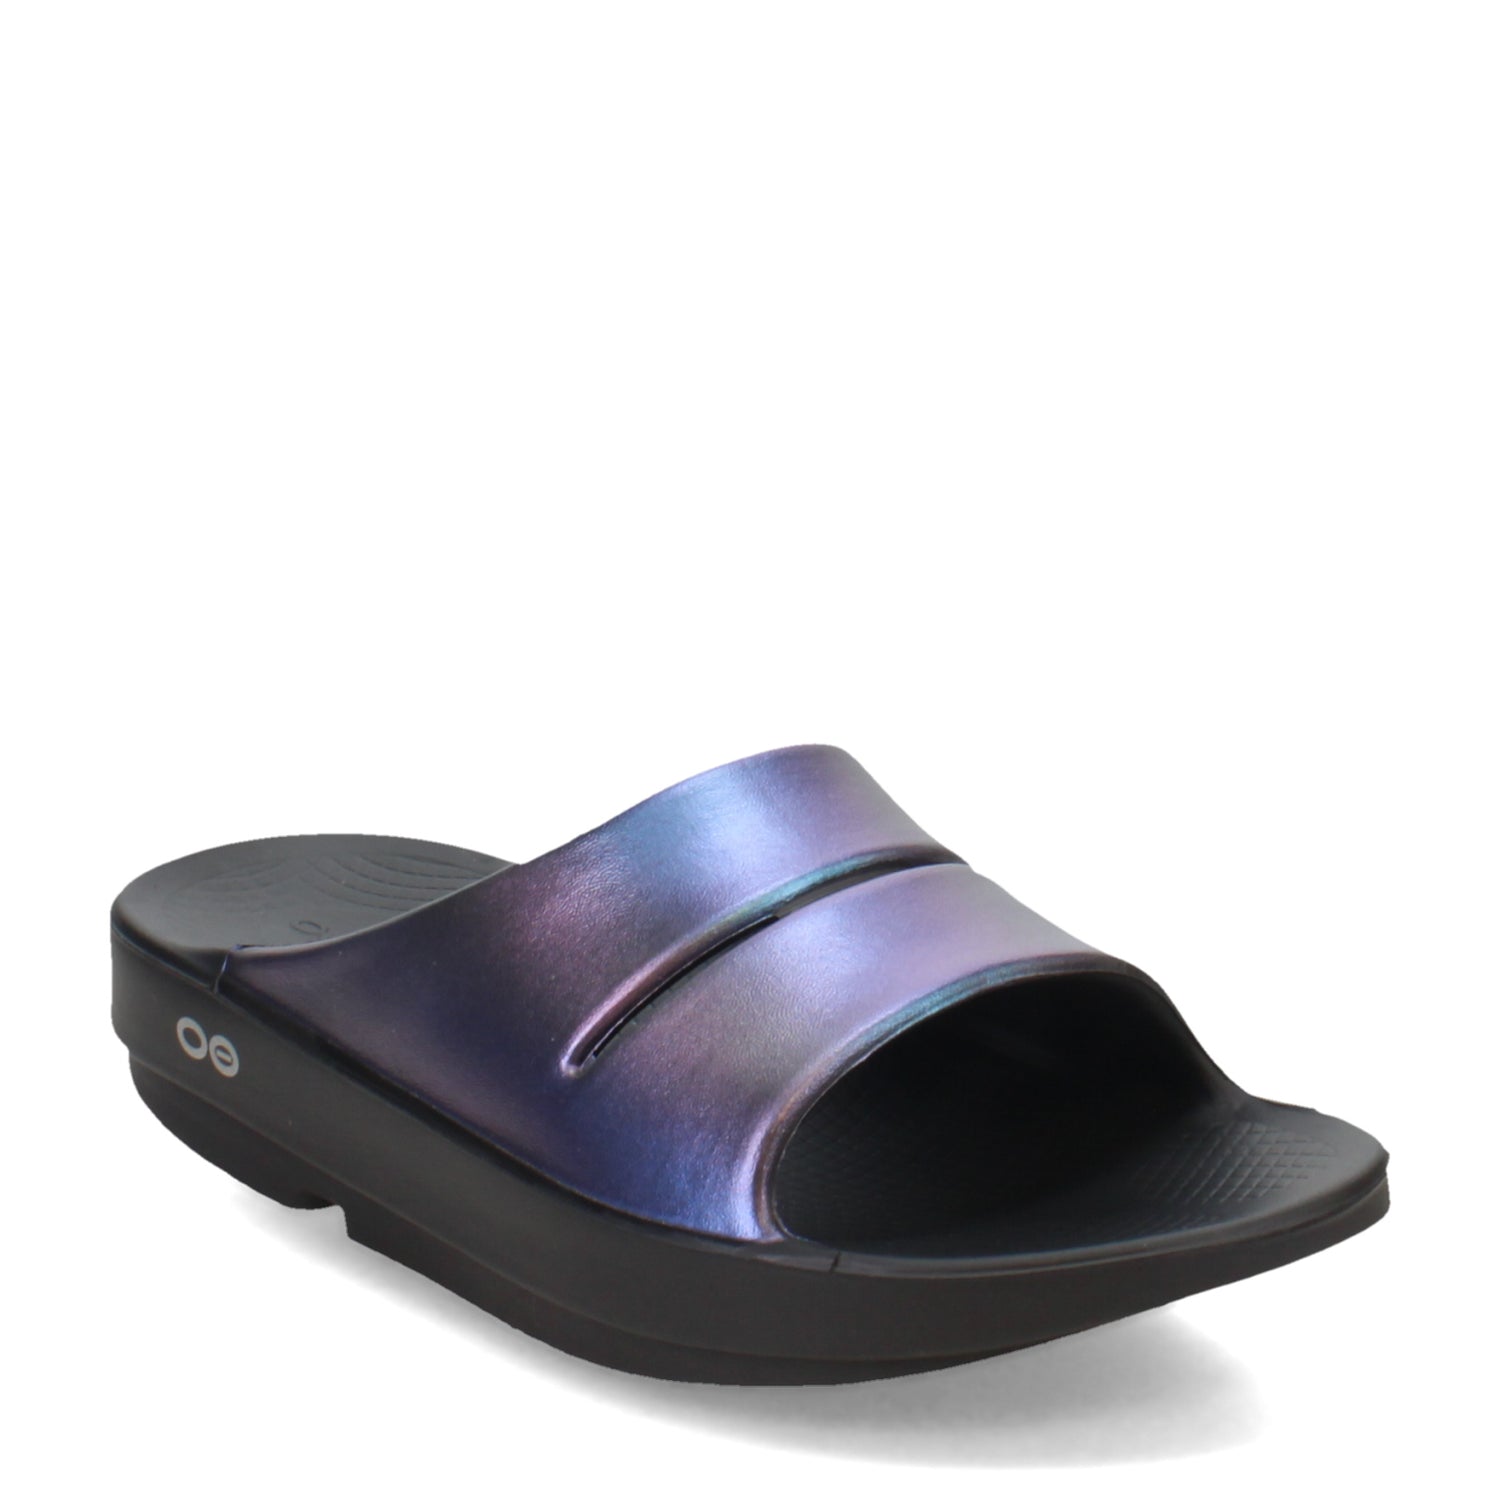 Peltz Shoes  Women's Oofos OOahh Slide Sandal Midnight Spectre 1101-MIDNIGHT